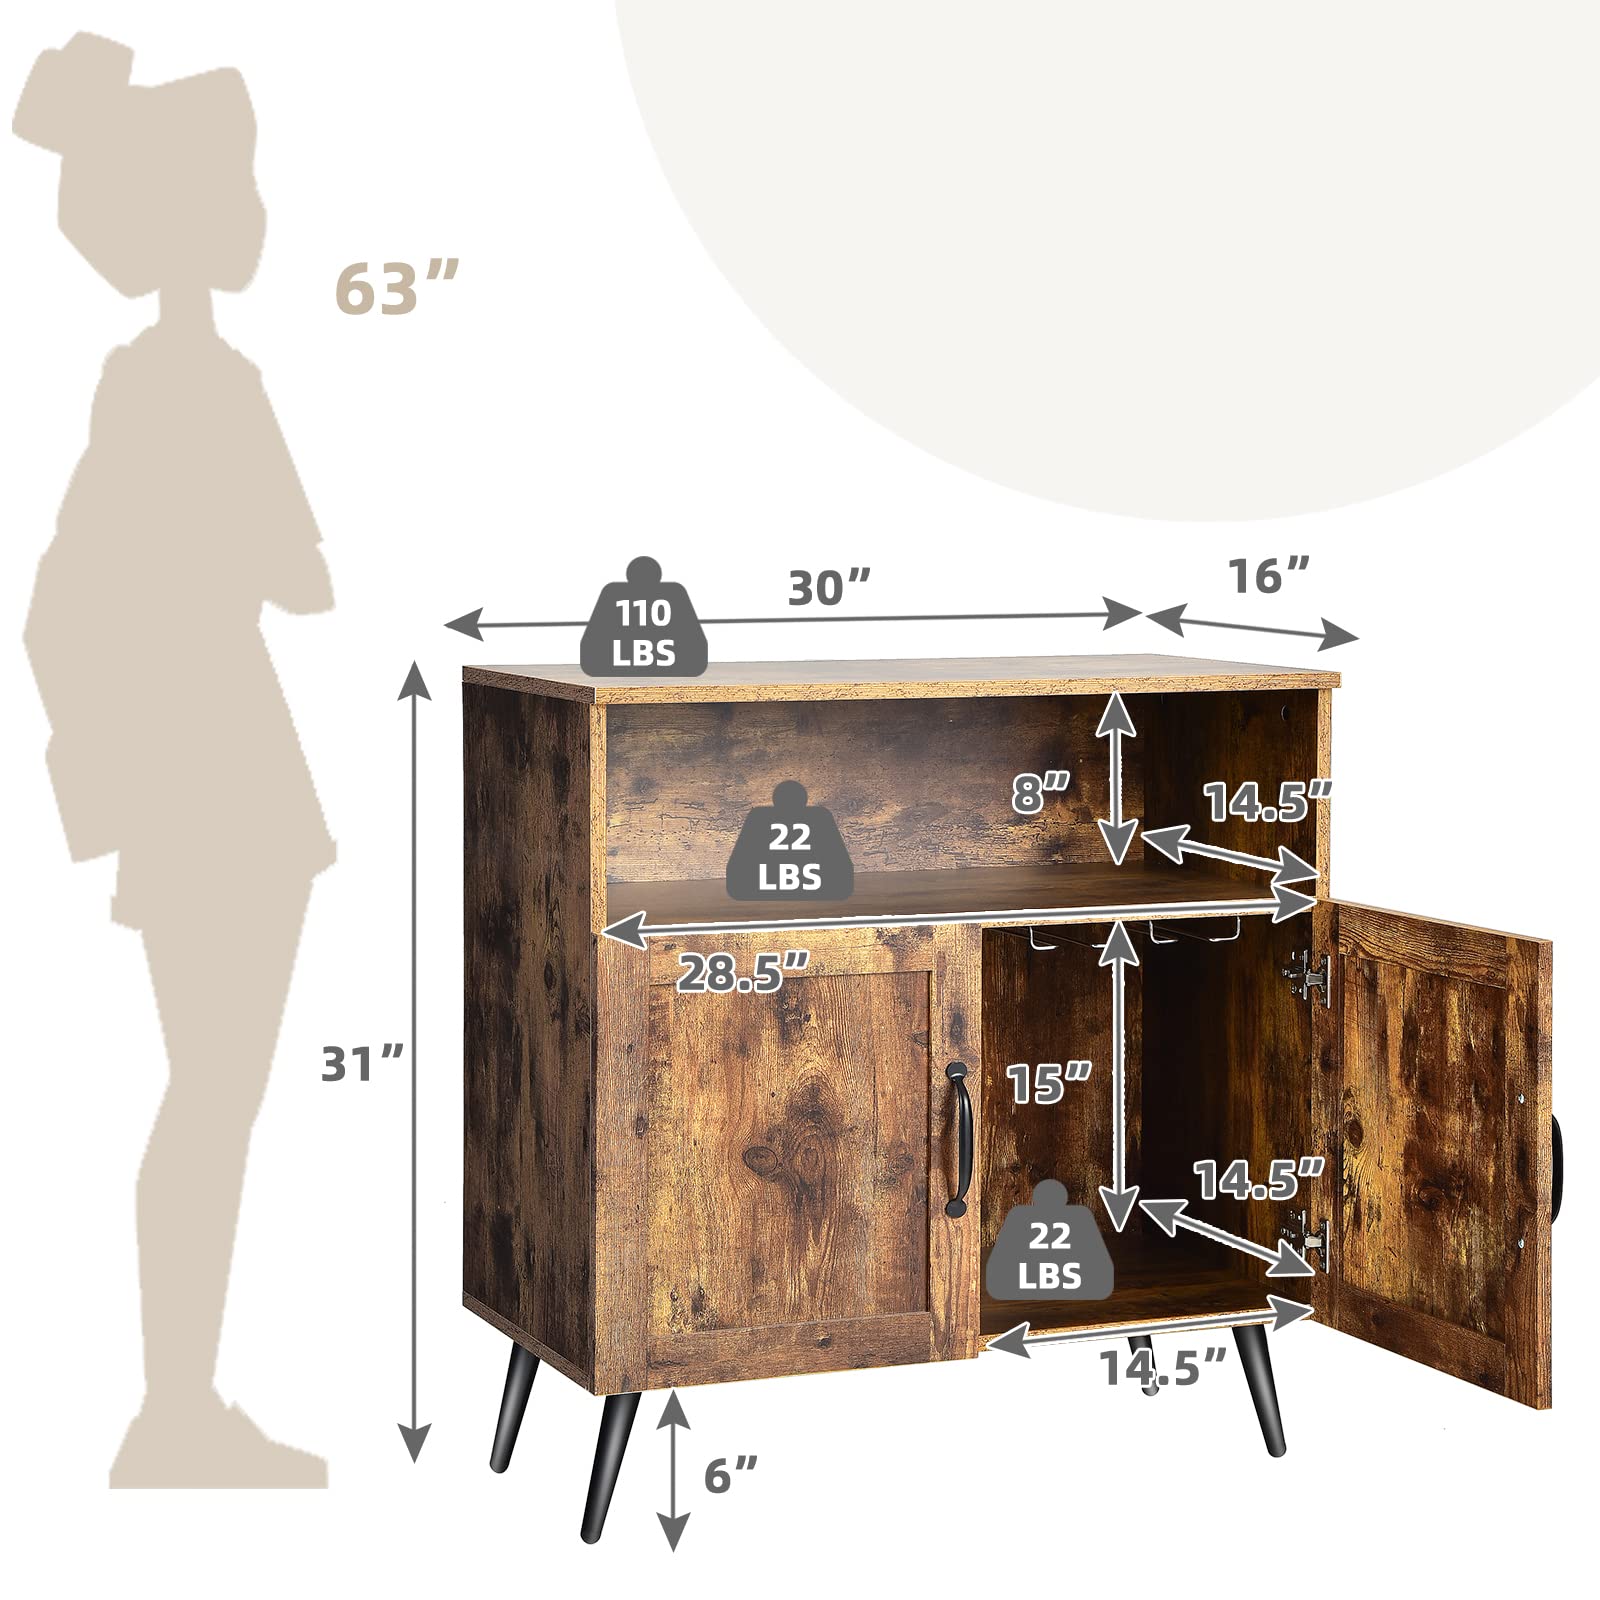 Giantex Mid-Century Storage Cabinet, Wooden Floor Cabinet with 2 Doors, Rustic Brown